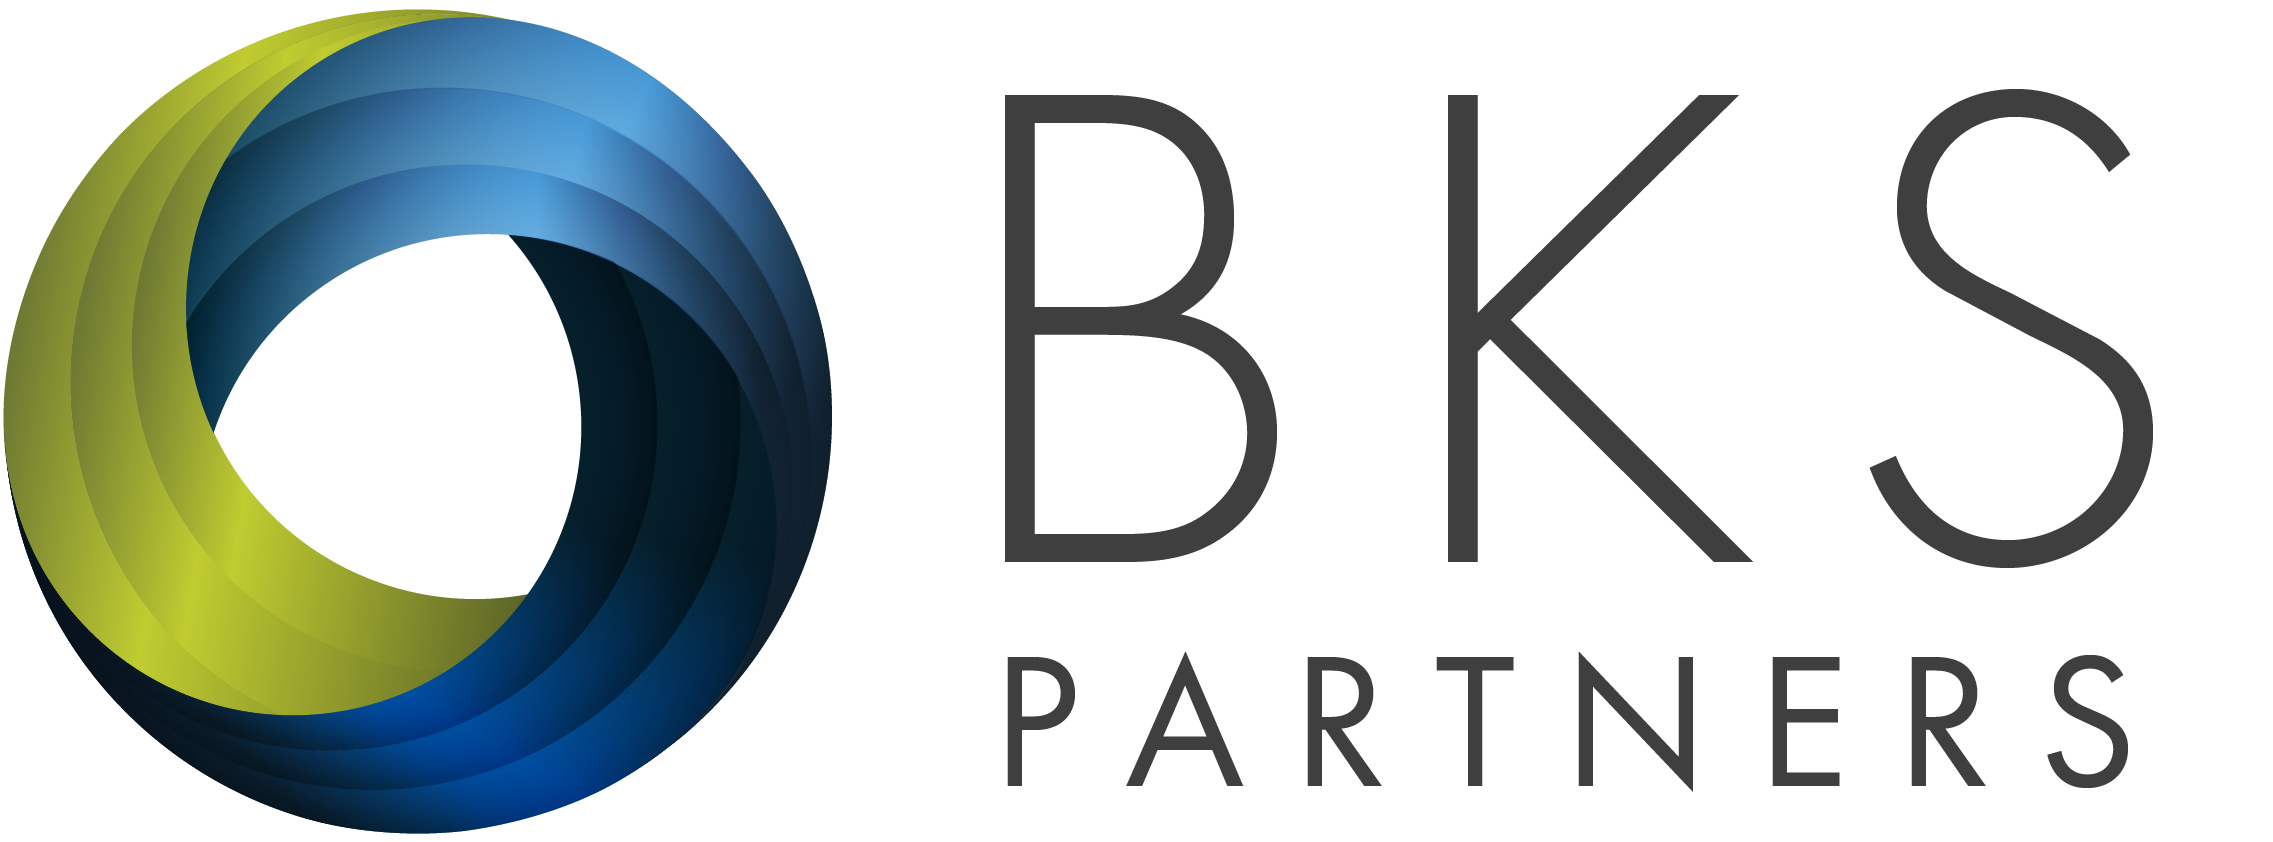 BKS Partners (Tier 4)